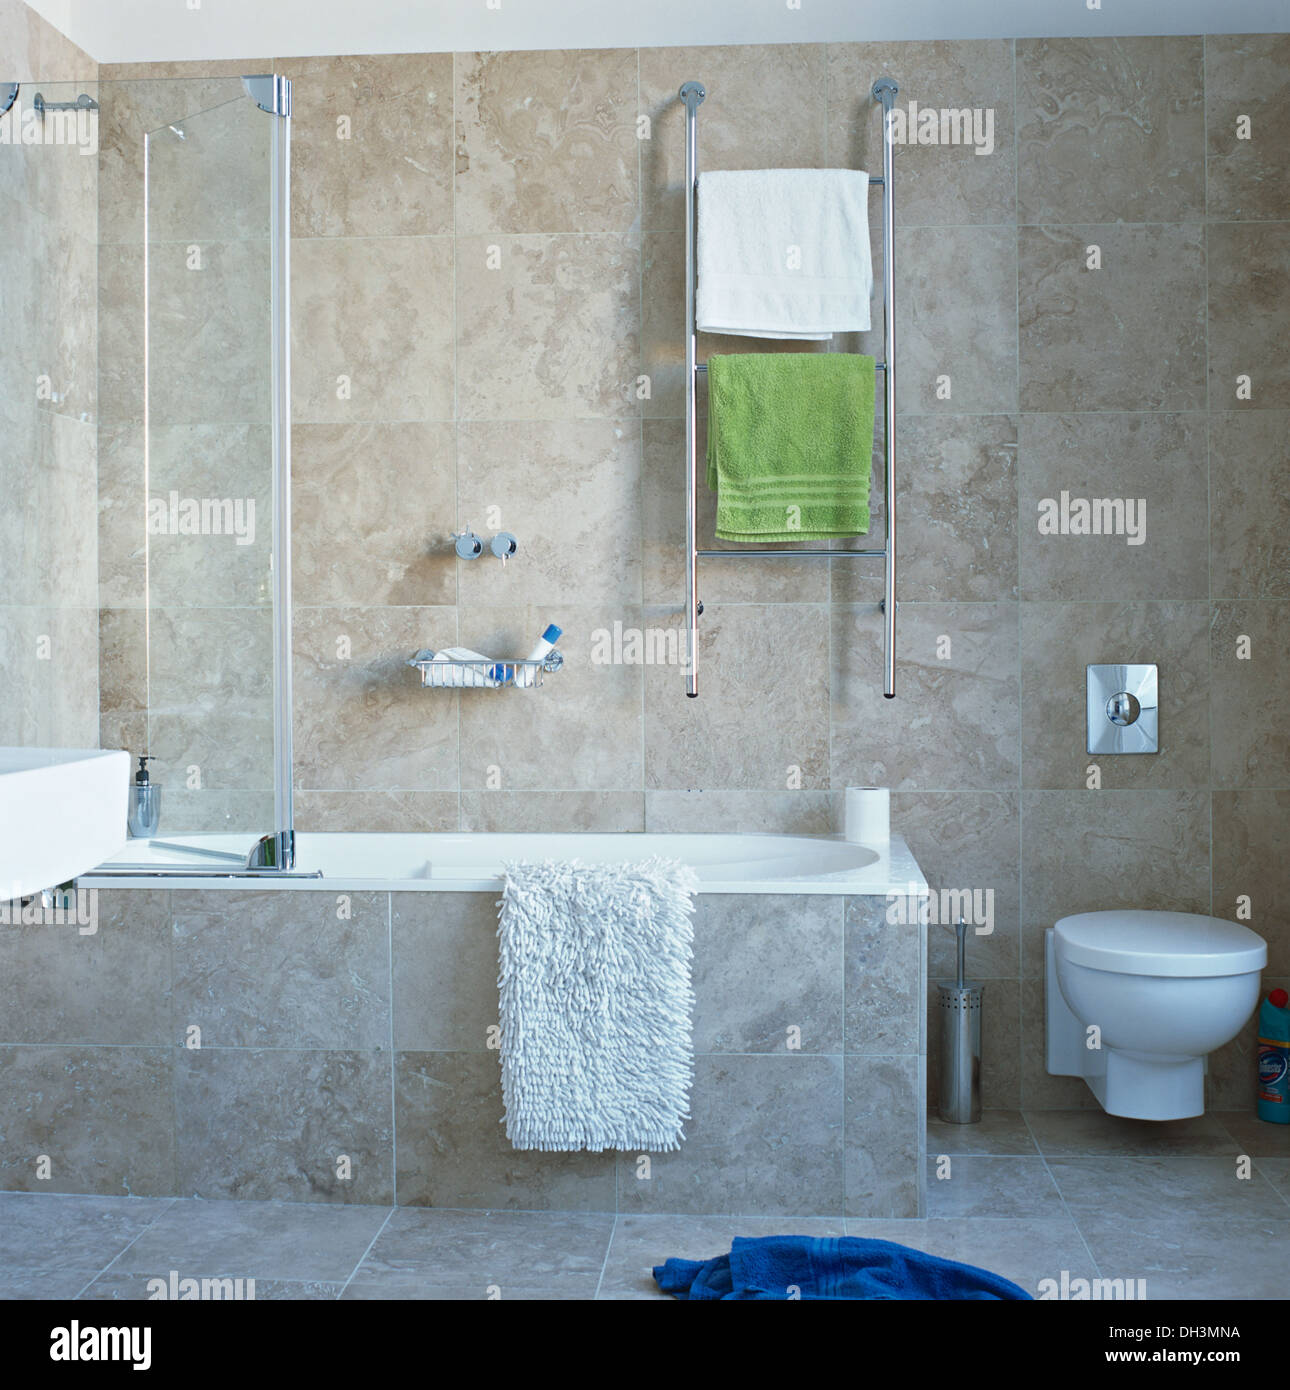 Calienta toallas en rampa de cromo en pared sobre la bañera con